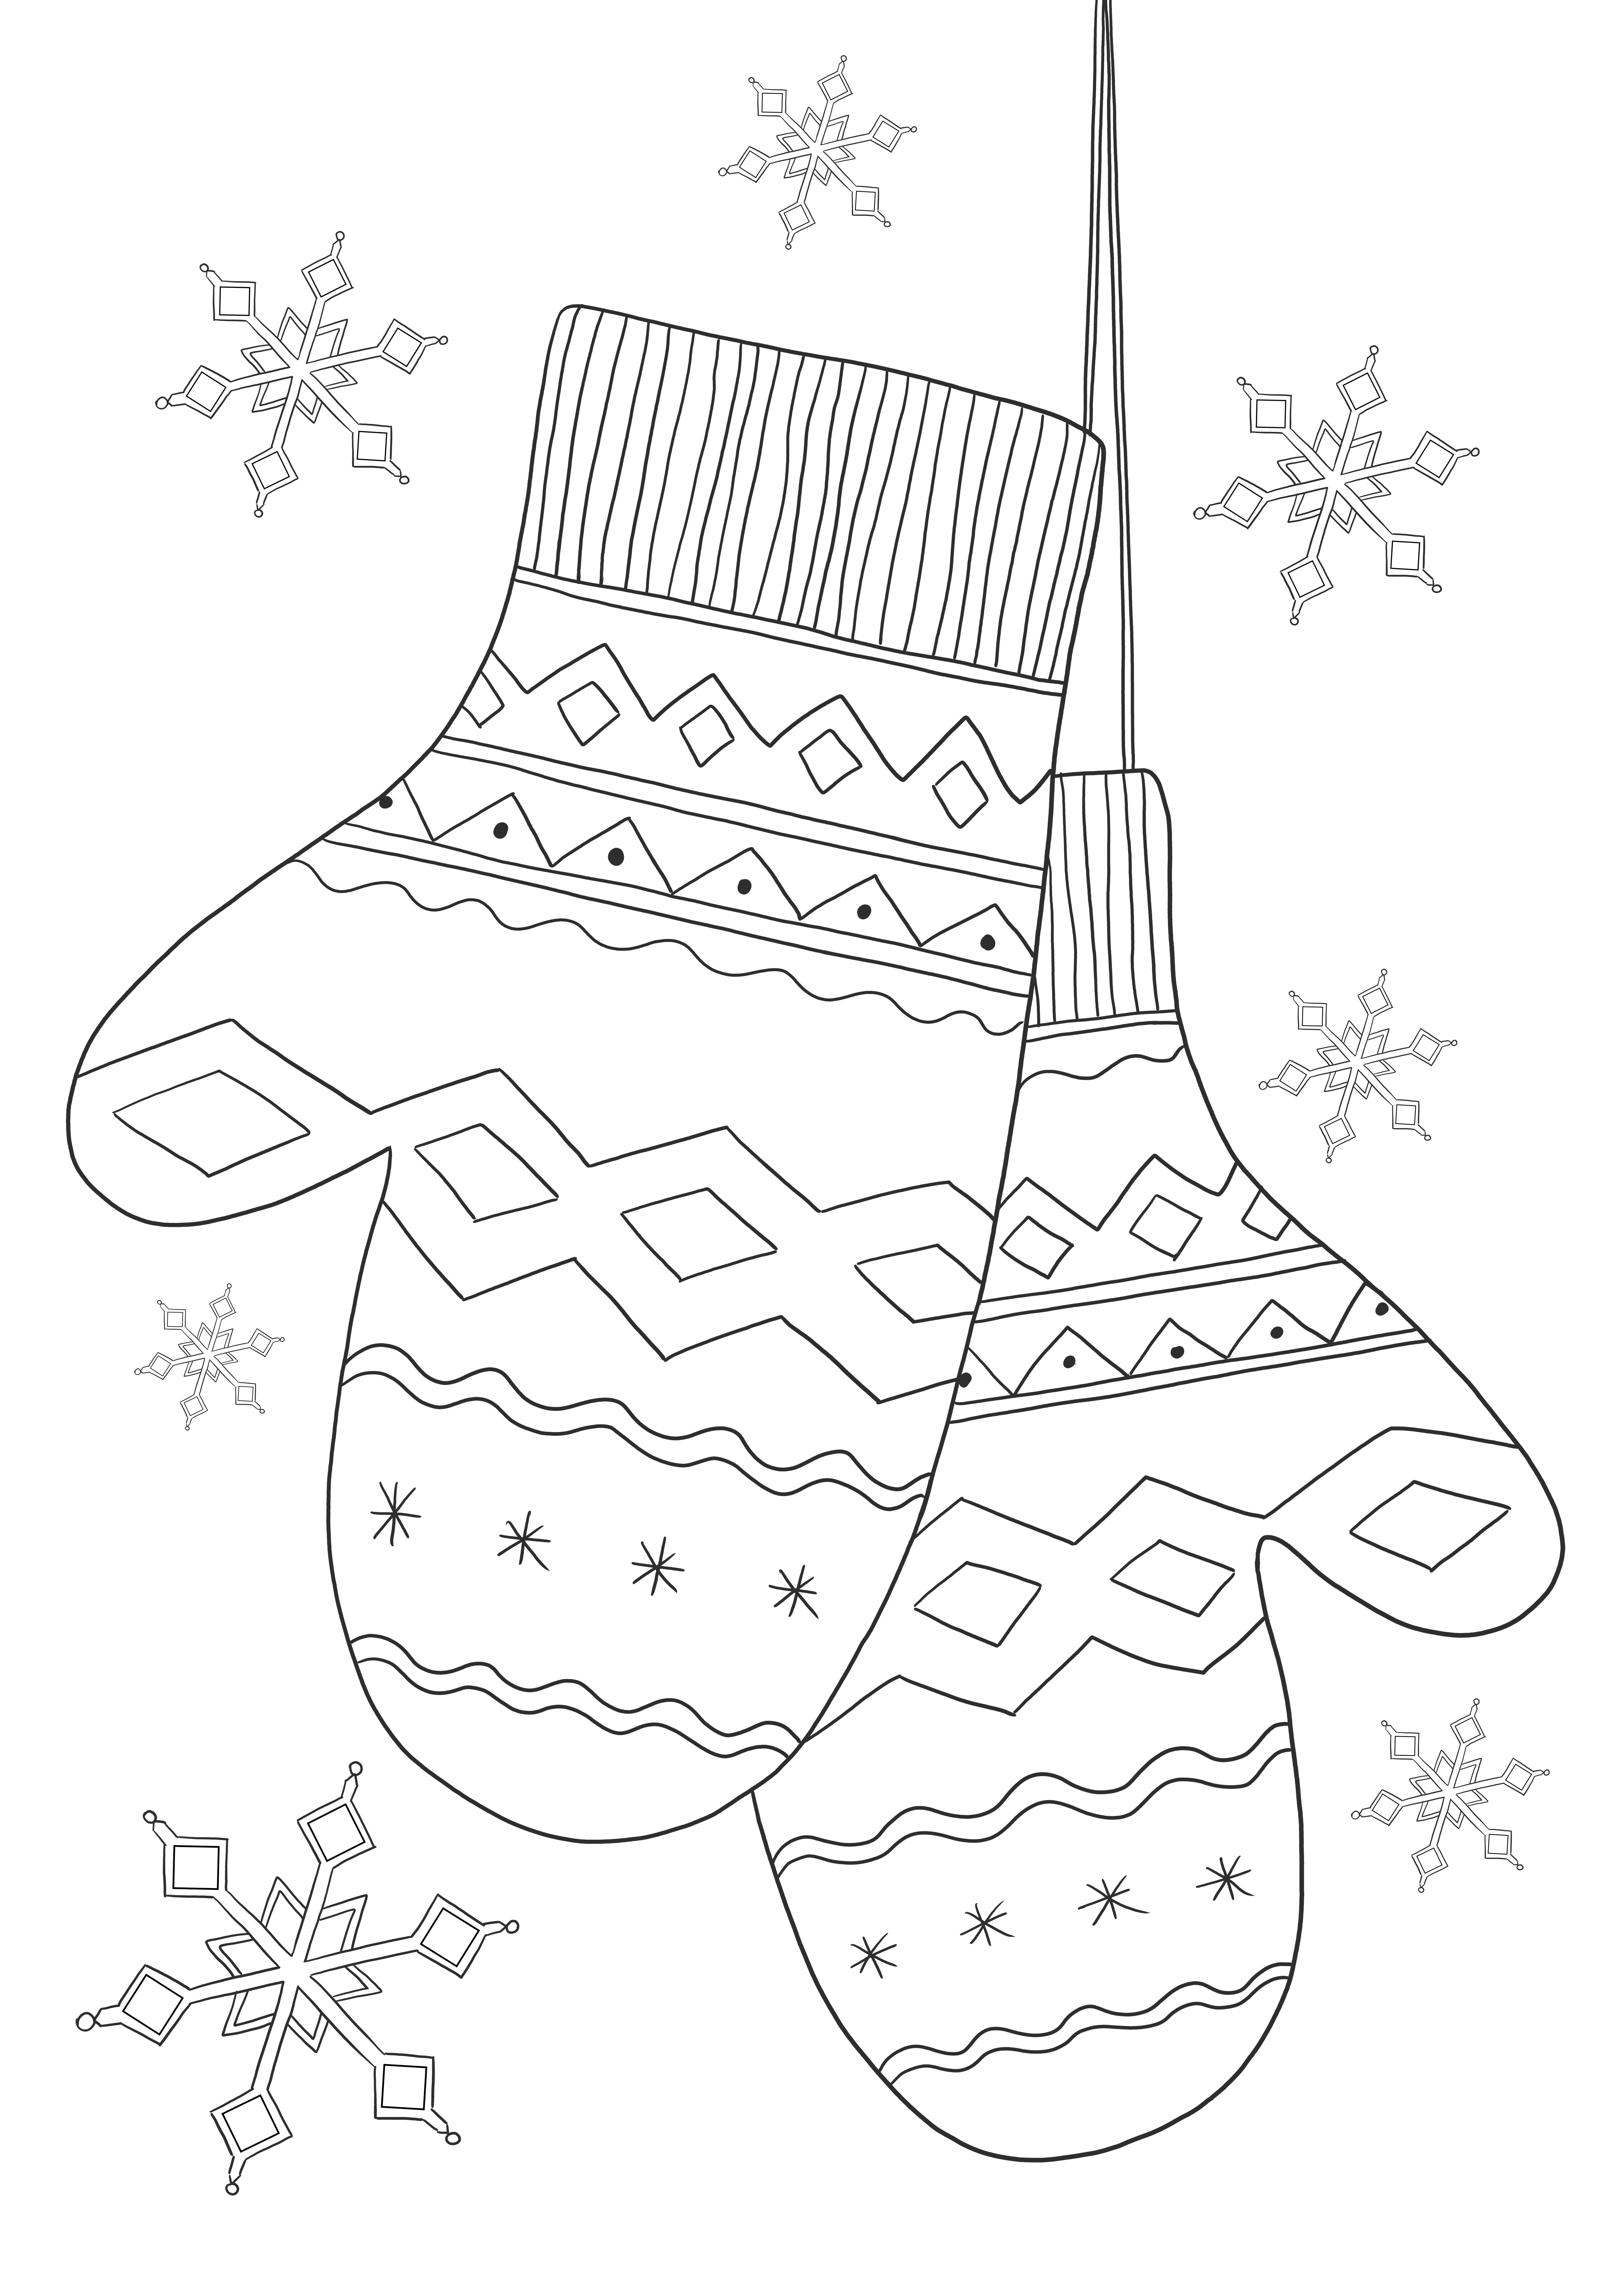 Kışlık giysiler hakkında bilgi edinmek için kışlık eldivensiz eğitim sayfası